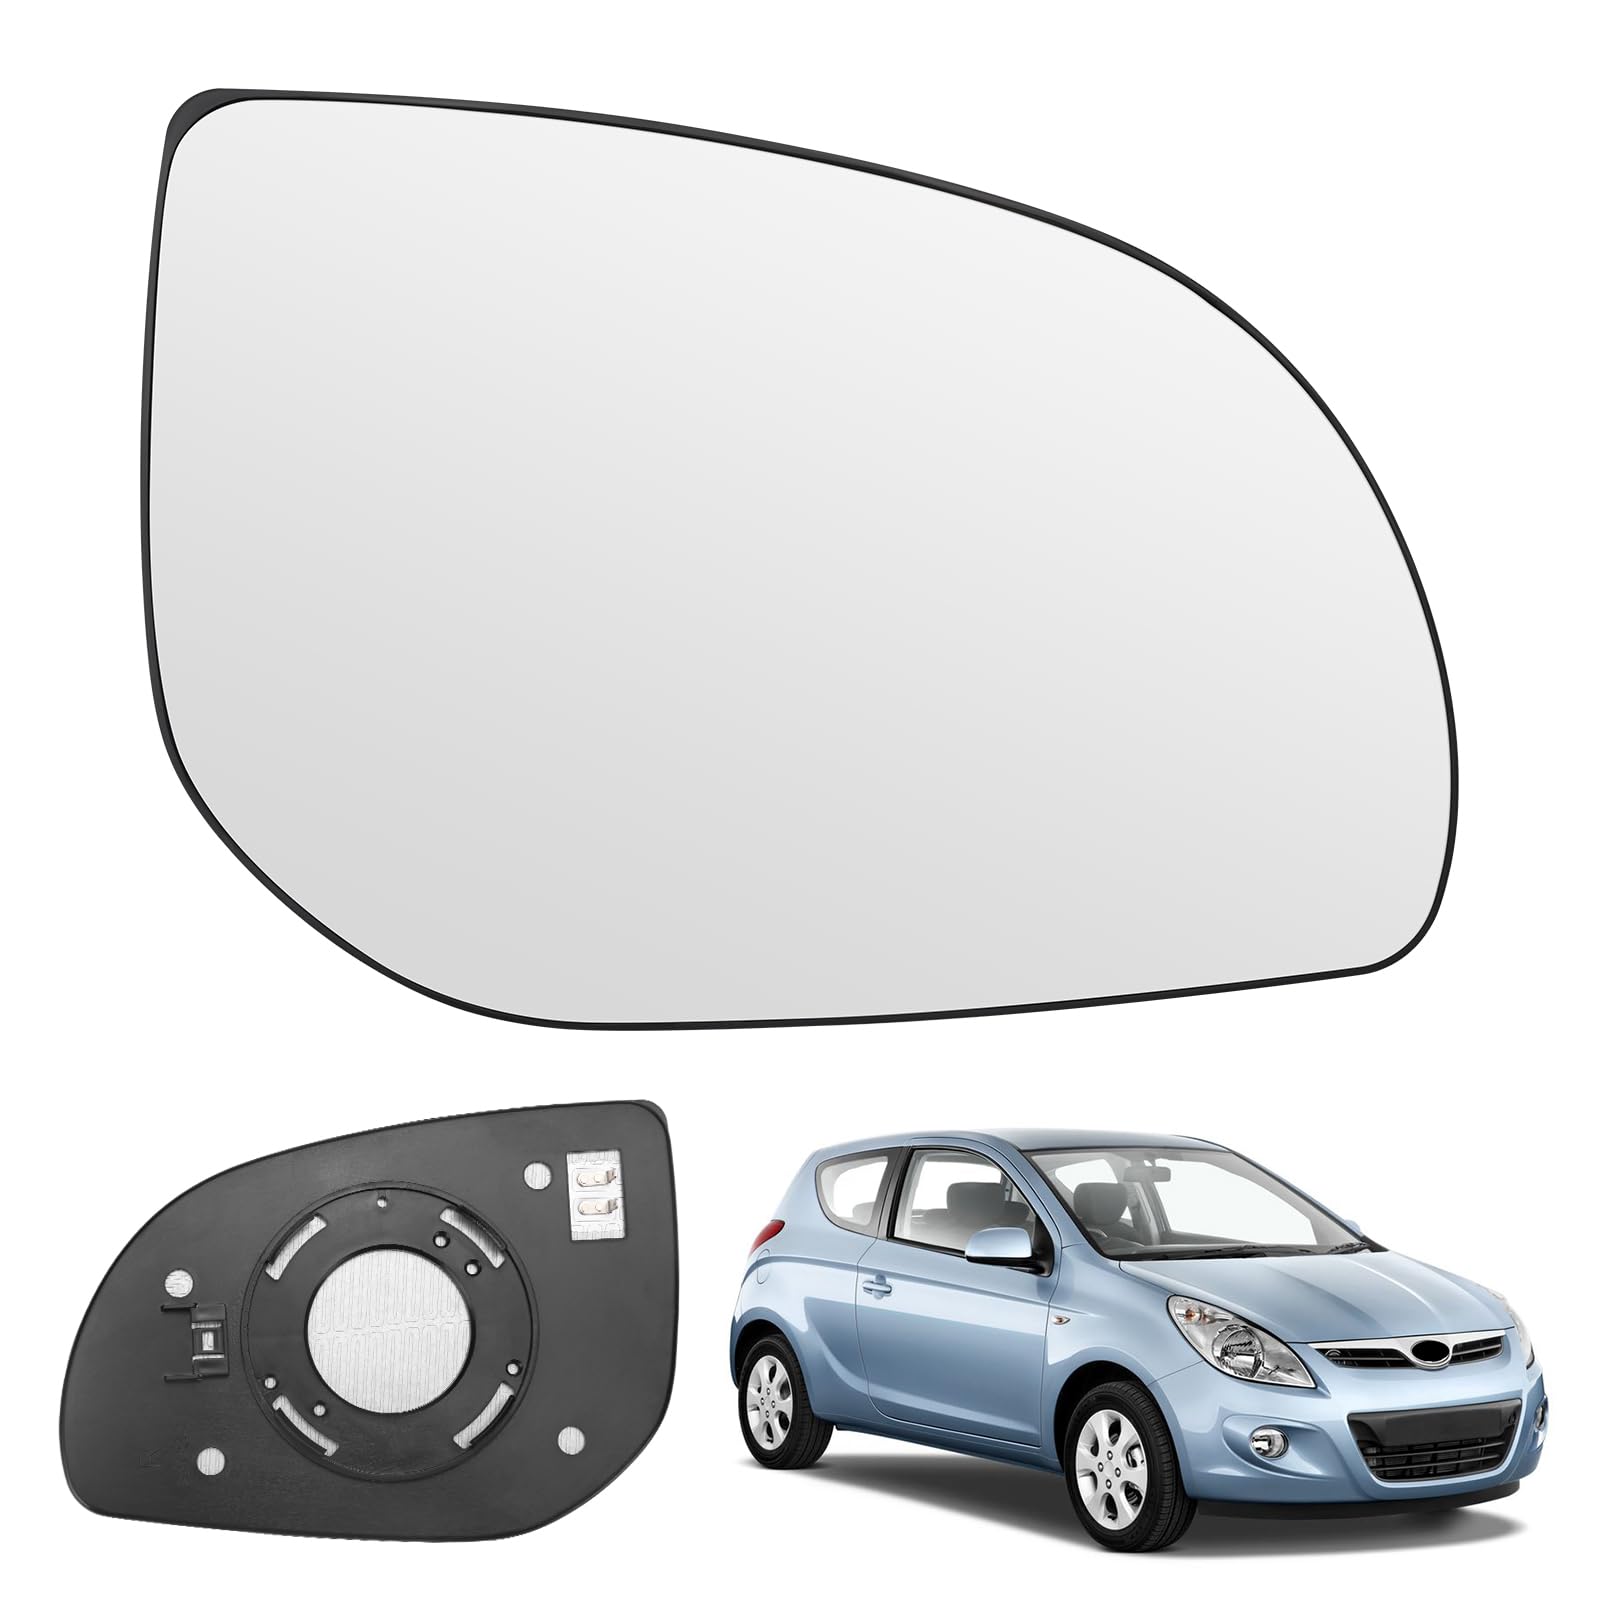 Spiegelglas Ersatz für Hyundai i20 2008-2014, Außenspiegel Glas Asphärisch Verstellbar Umkehrlinse Rückfahrglas Geeignet, Umkehrlinse Rückfahrglas Spiegel (Rechts) von JinsenTGG